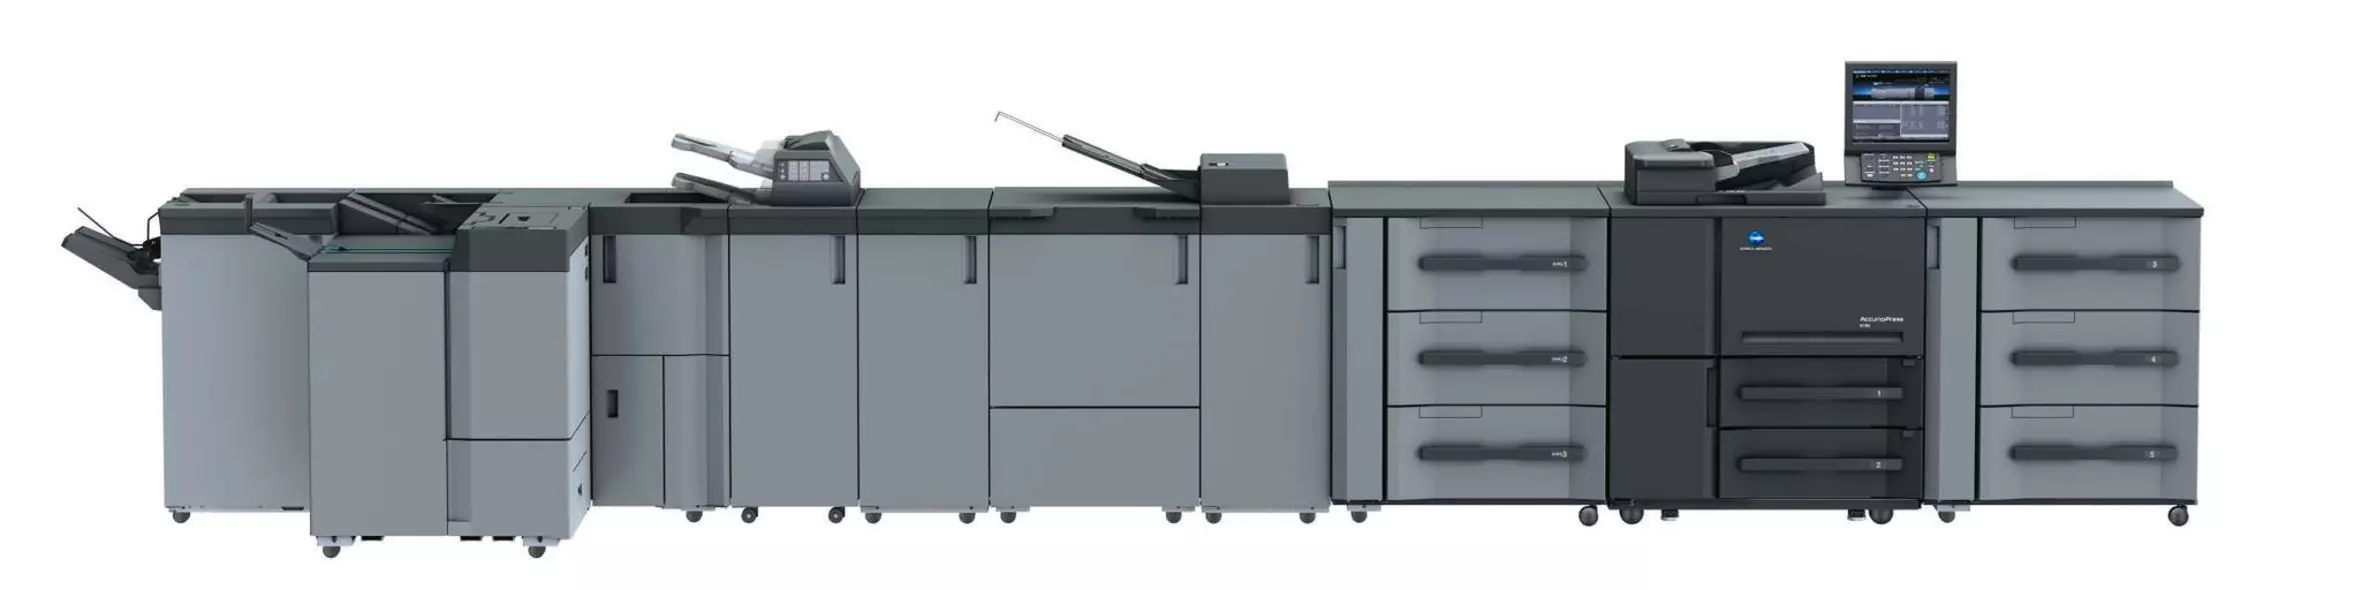 Konica Minolta AccurioPress 6136p professionel printer